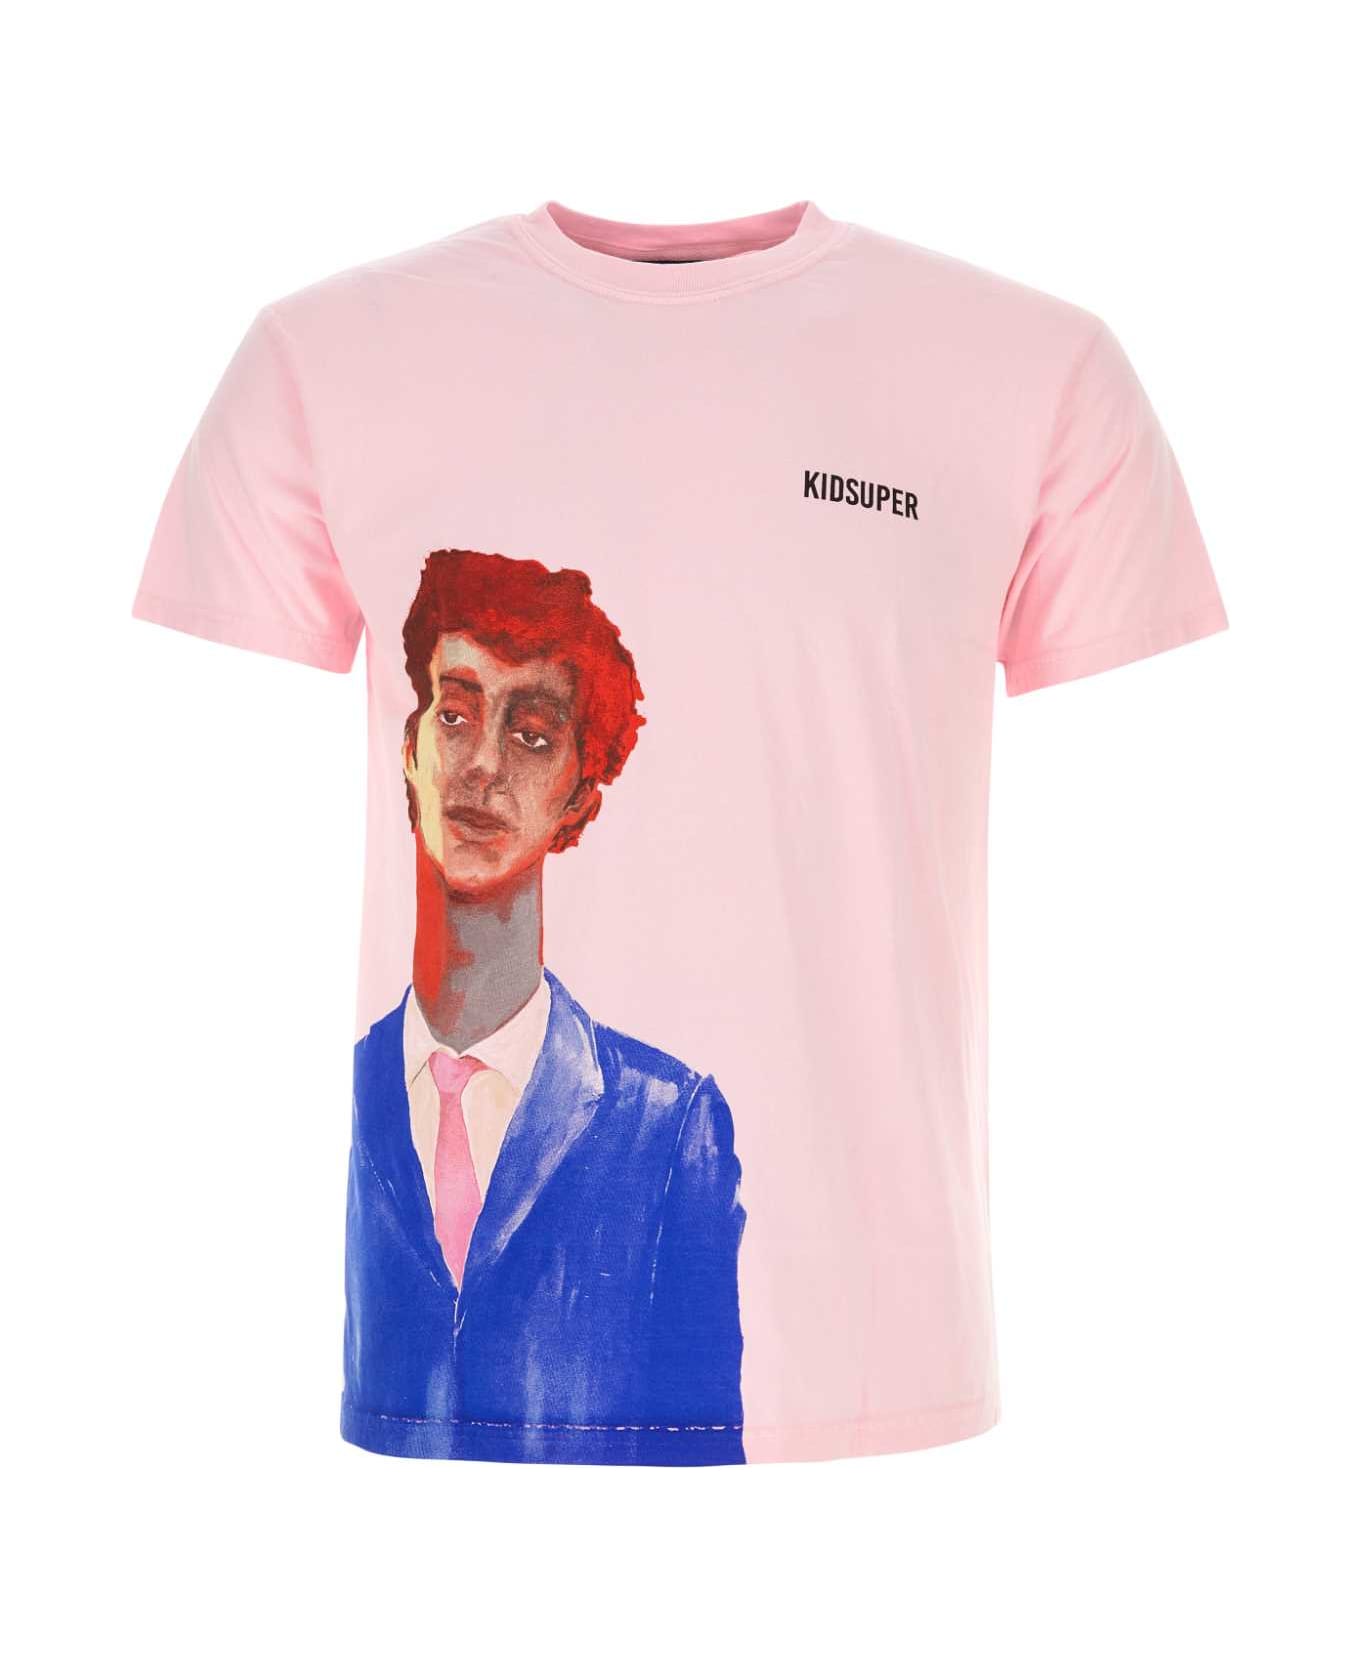 Kidsuper Pink Cotton T-shirt - ABOYPINK シャツ